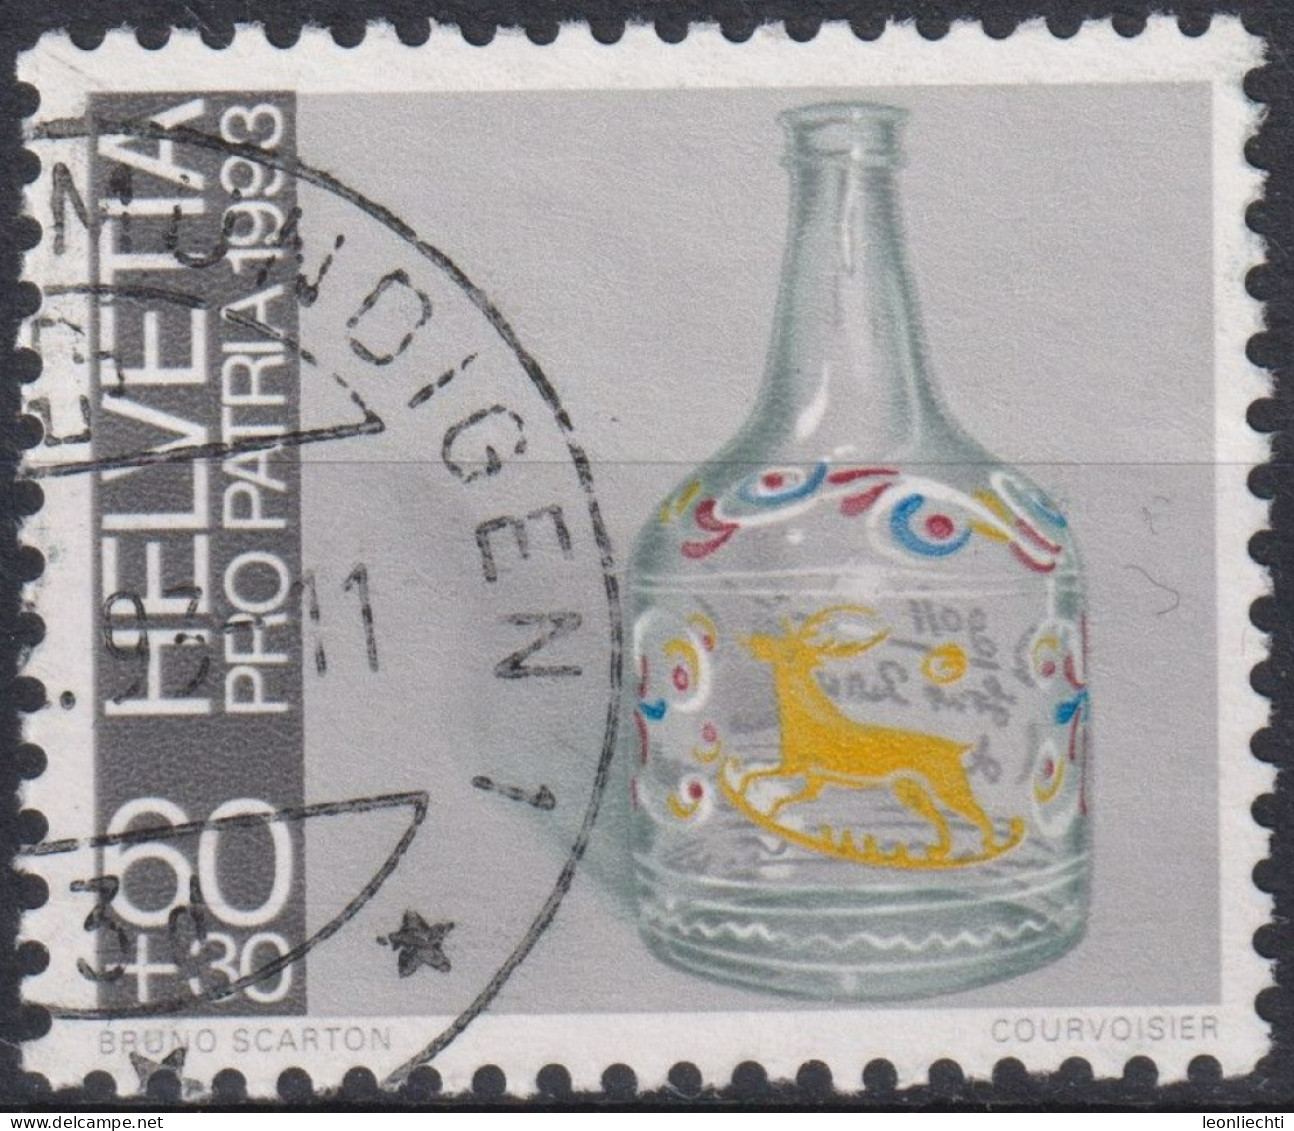 1993 Schweiz Pro Patria, Volkskunst, Flühli-Glas, ⵙ Zum:CH B240, Mi:CH 1503 Yt: CH 1430 - Gebraucht